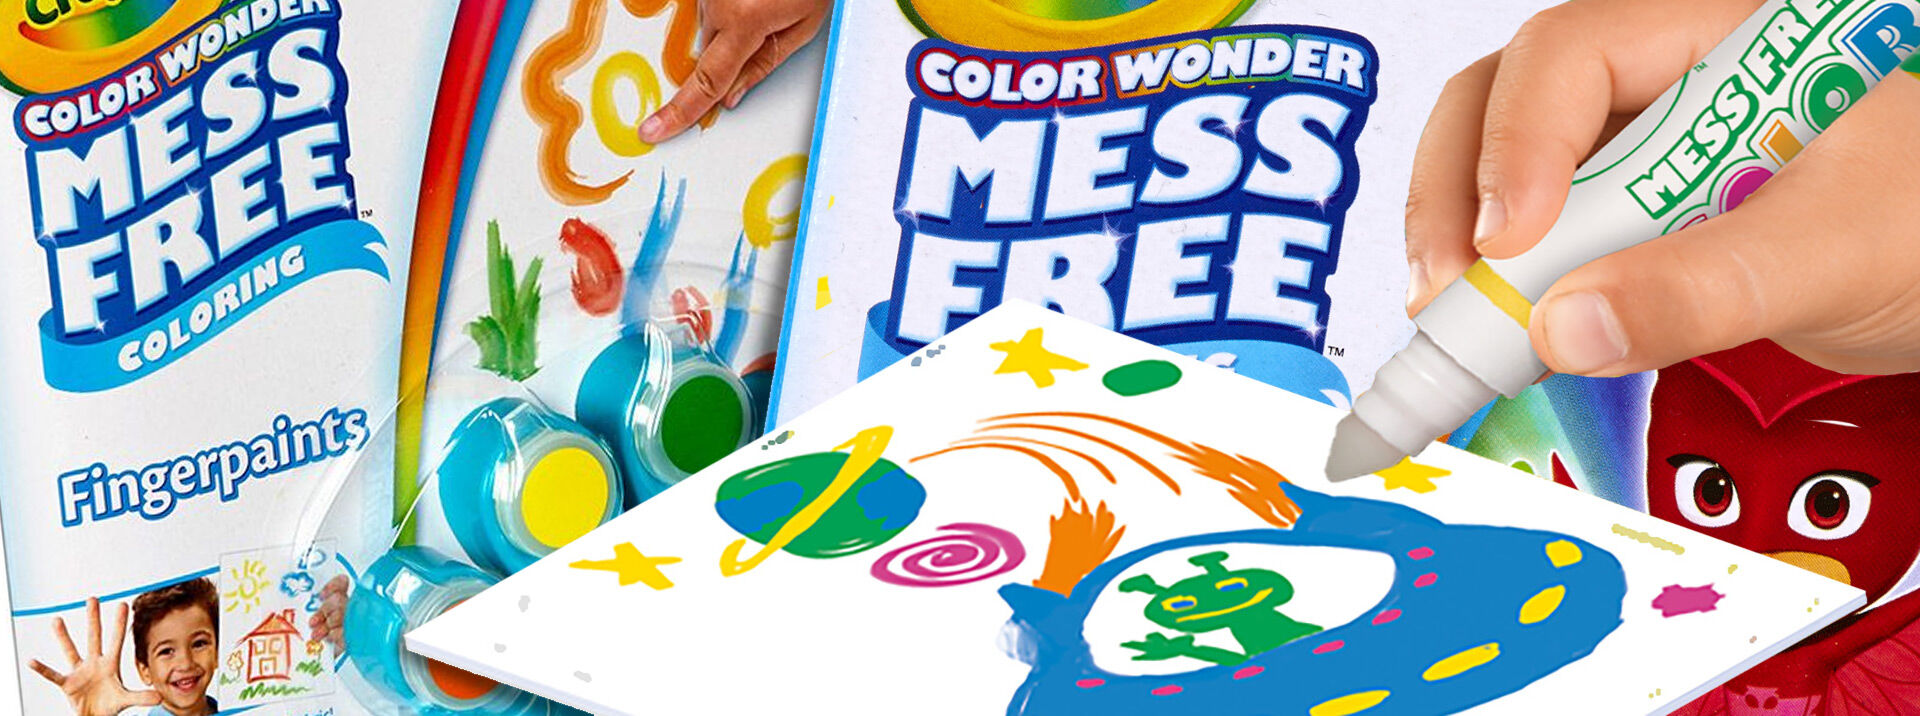 Download Color Wonder Mess Free Coloring Toys Crayola Com Crayola